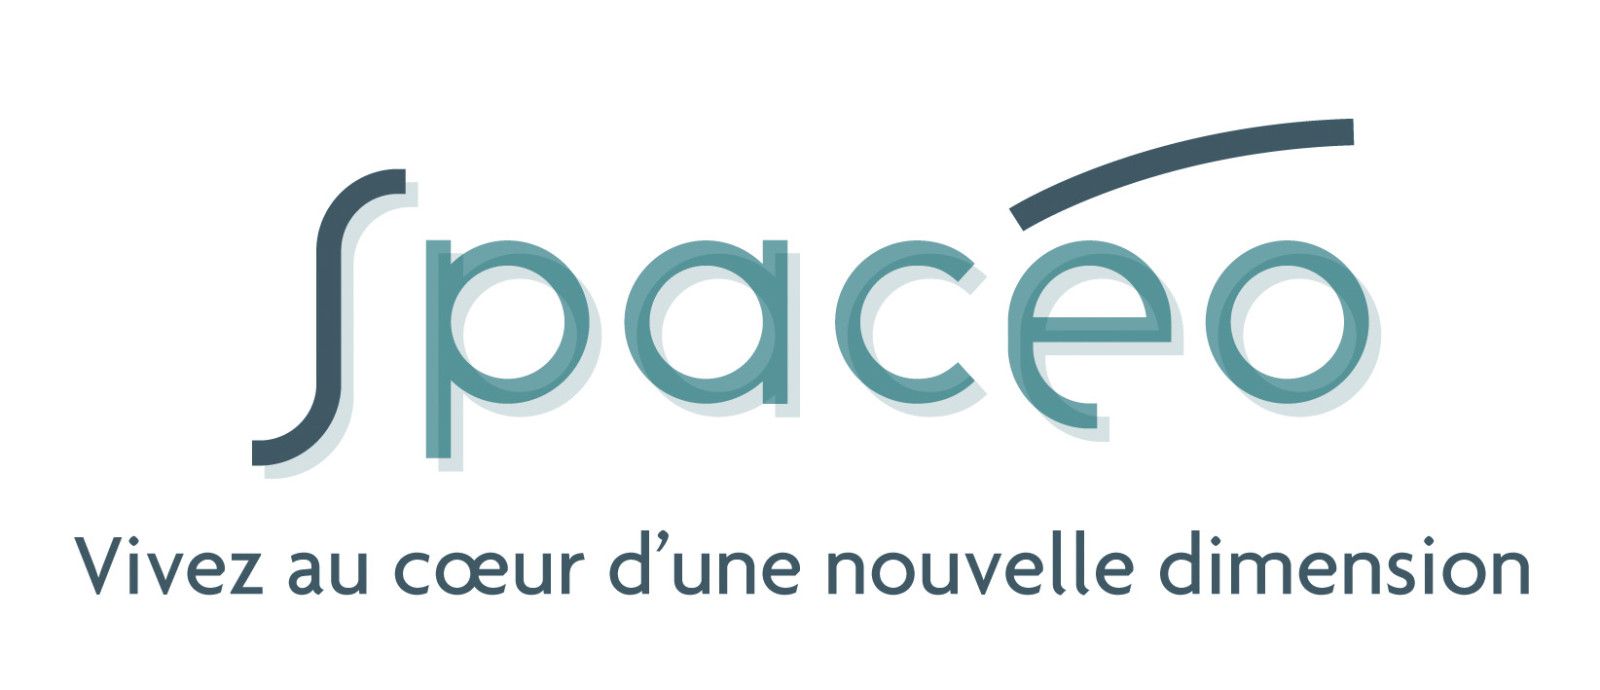 Spaceo logo